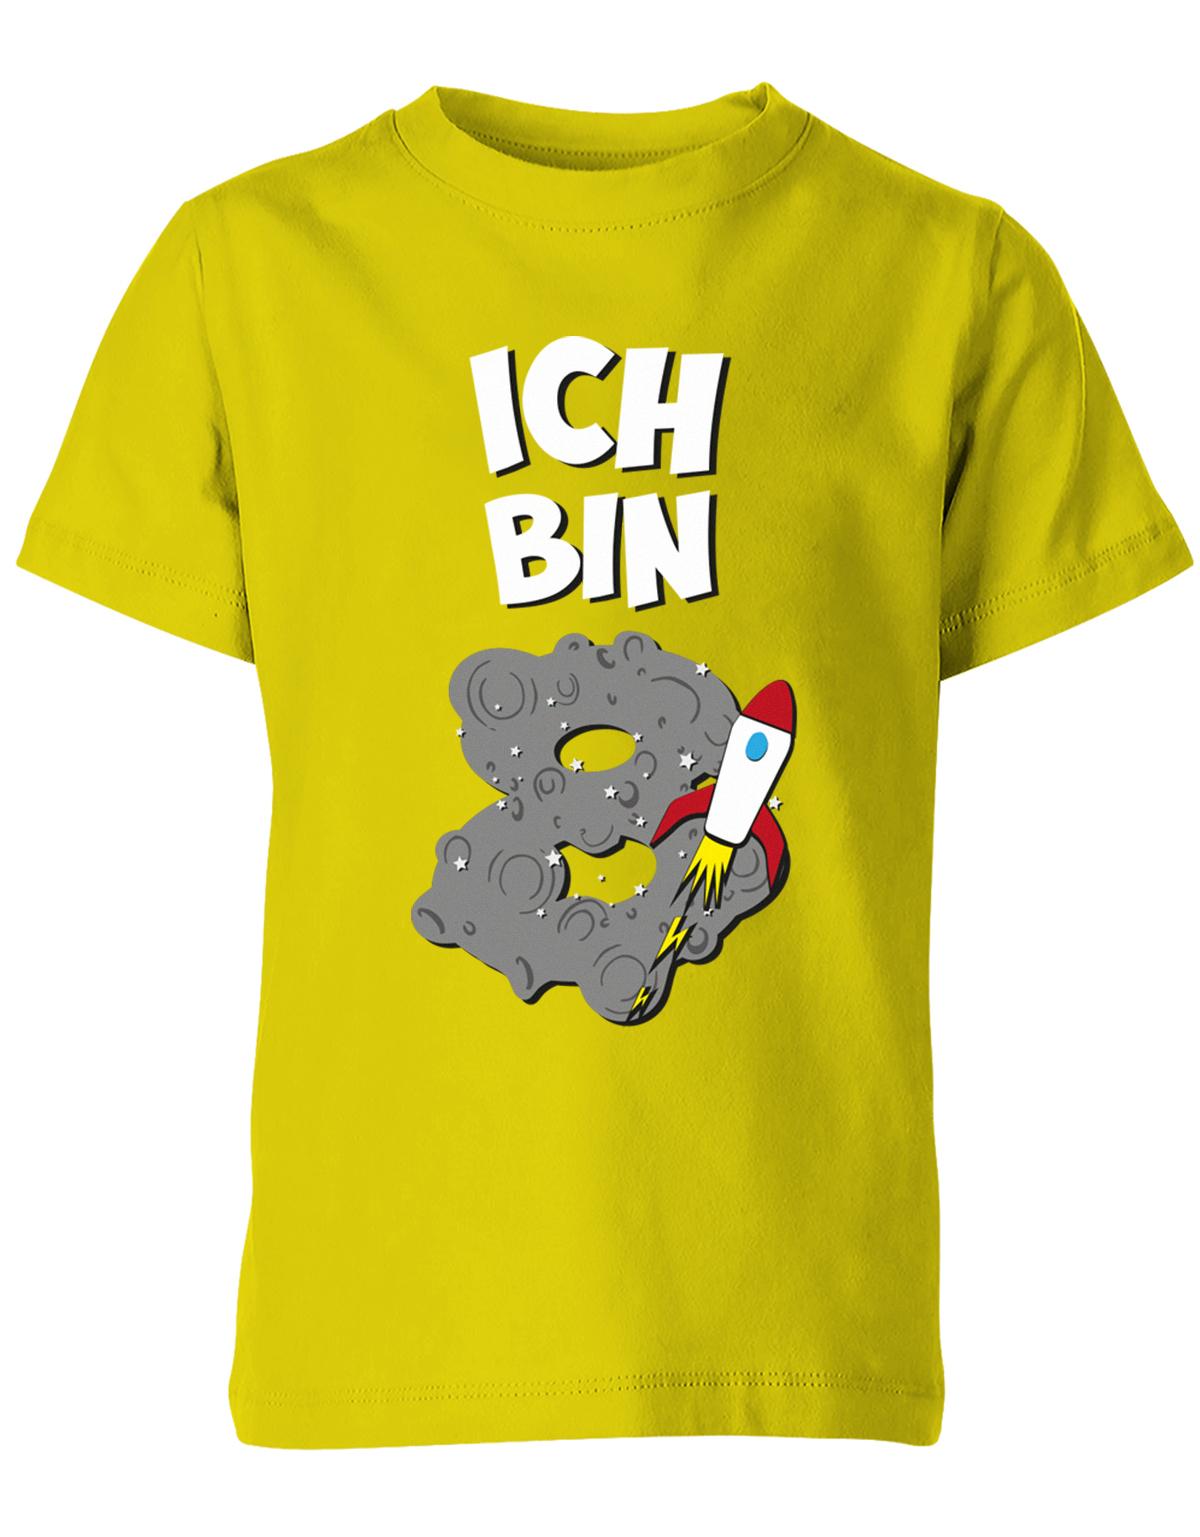 ich-bin-8-weltraum-rakete-planet-geburtstag-kinder-shirt-gelb